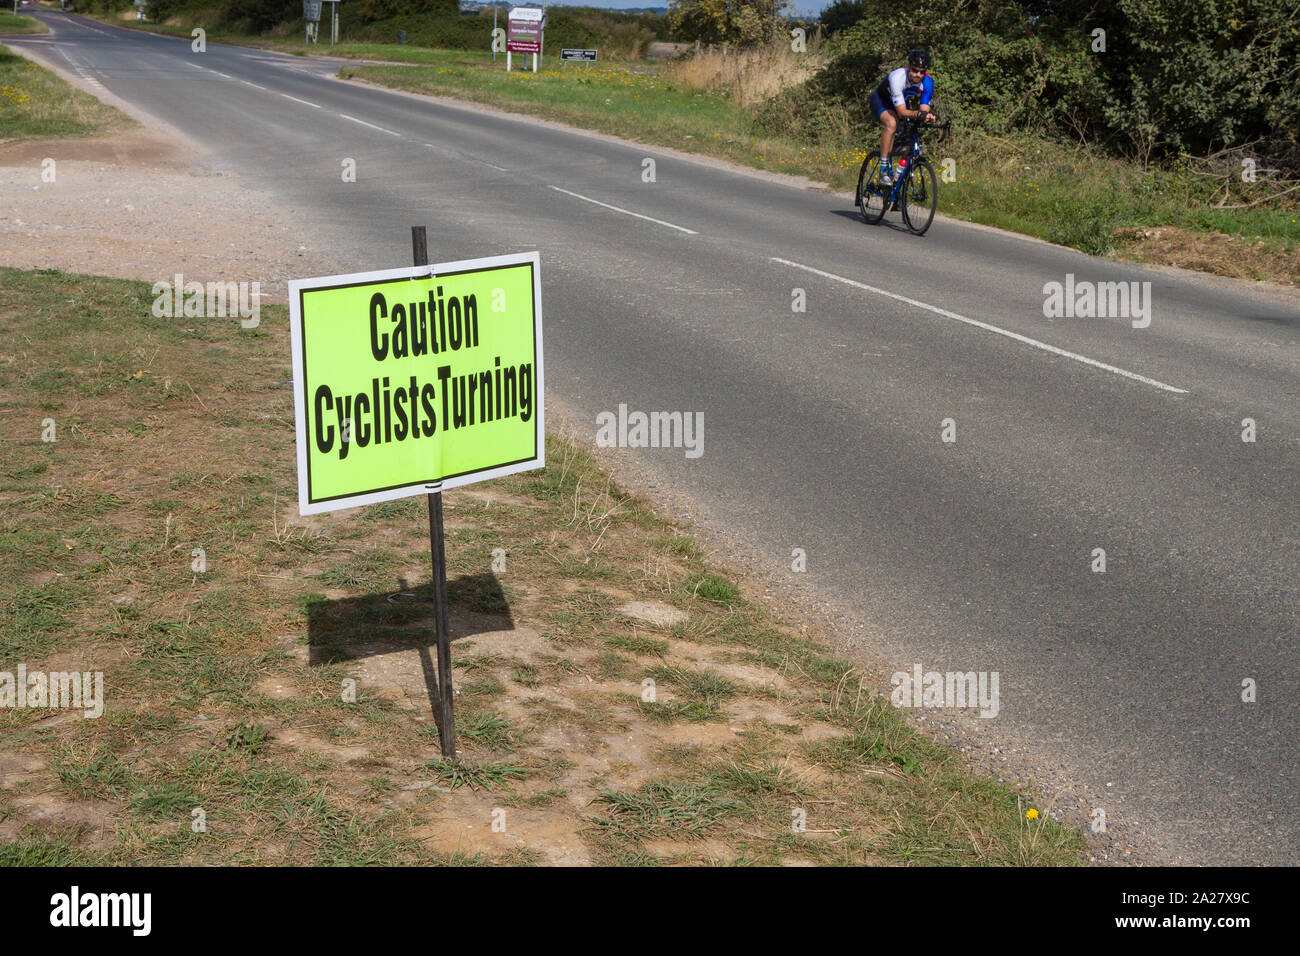 Un 'attenzione ai ciclisti la tornitura" sicurezza stradale segno di ciclismo su strada un orlo Foto Stock